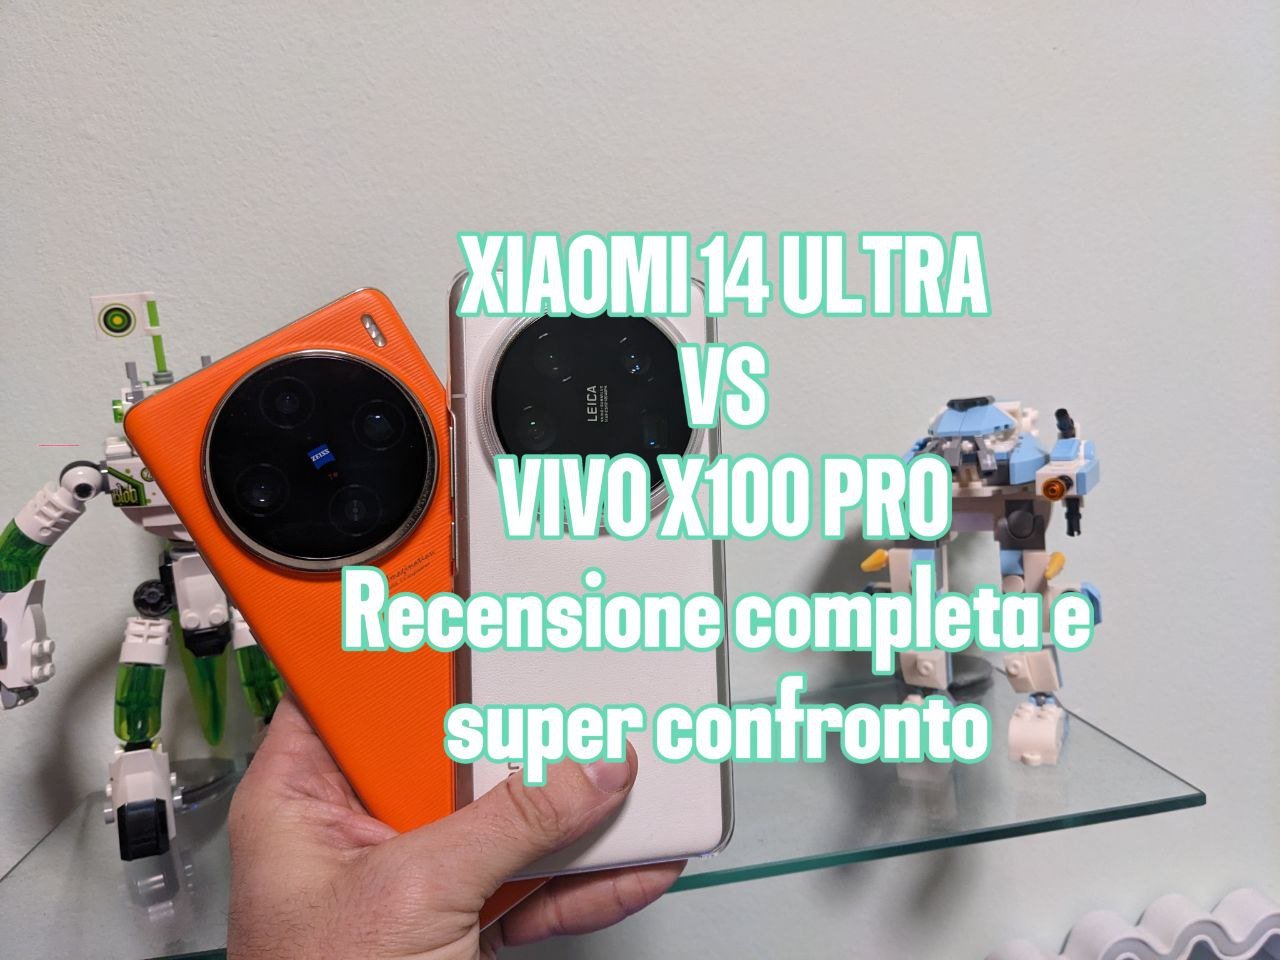 Xiaomi 14 Ultra e Vivo X100 Pro, voi quale scegliereste?